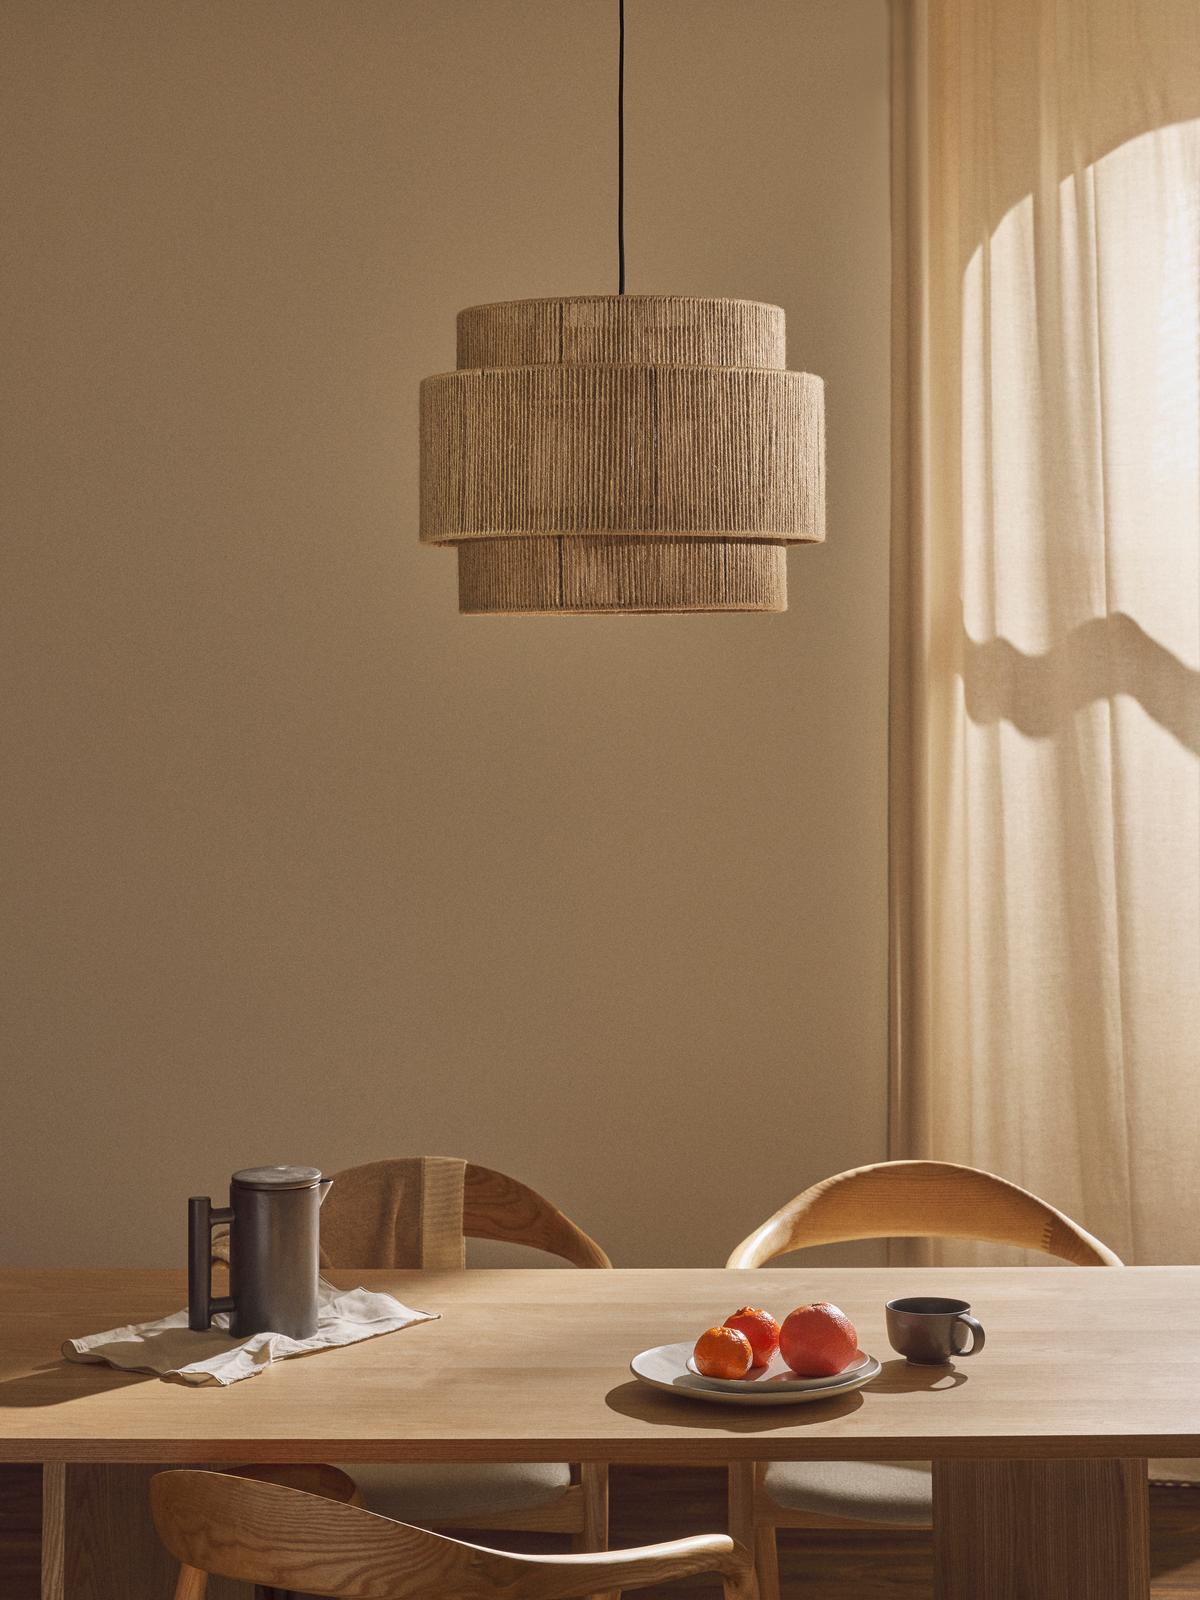 Bamboo Hanging lamp for Living Room | Rattan Pendant light | Cane ceiling light - Devesh - Akway